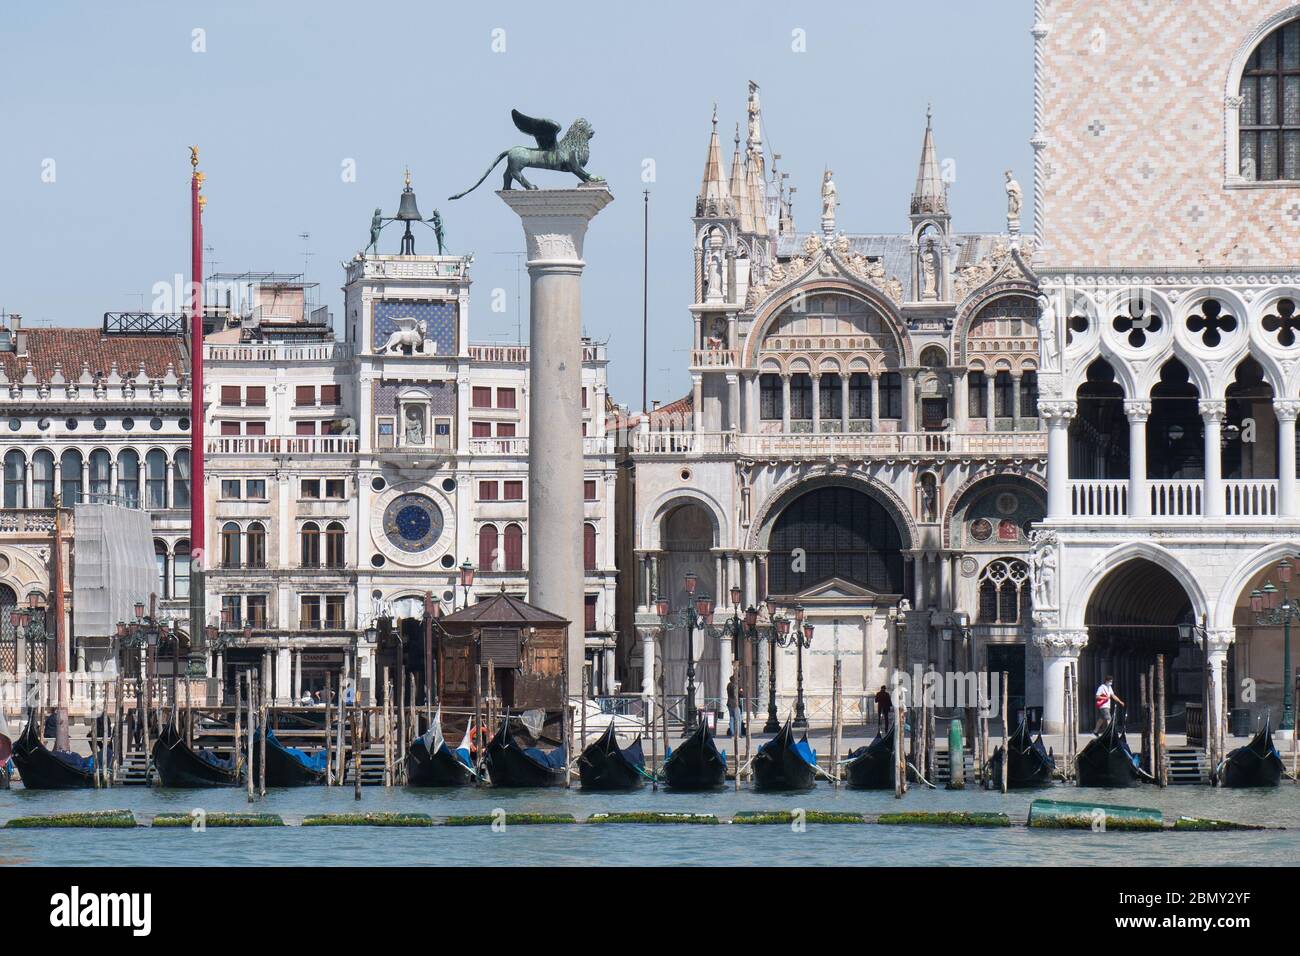 VENEZIA, ITALIA - 08 MAGGIO: Veduta del Palazzo Ducale, la basilica di San Marco durante il blocco per contenere la diffusione del Coronavirus. Foto Stock